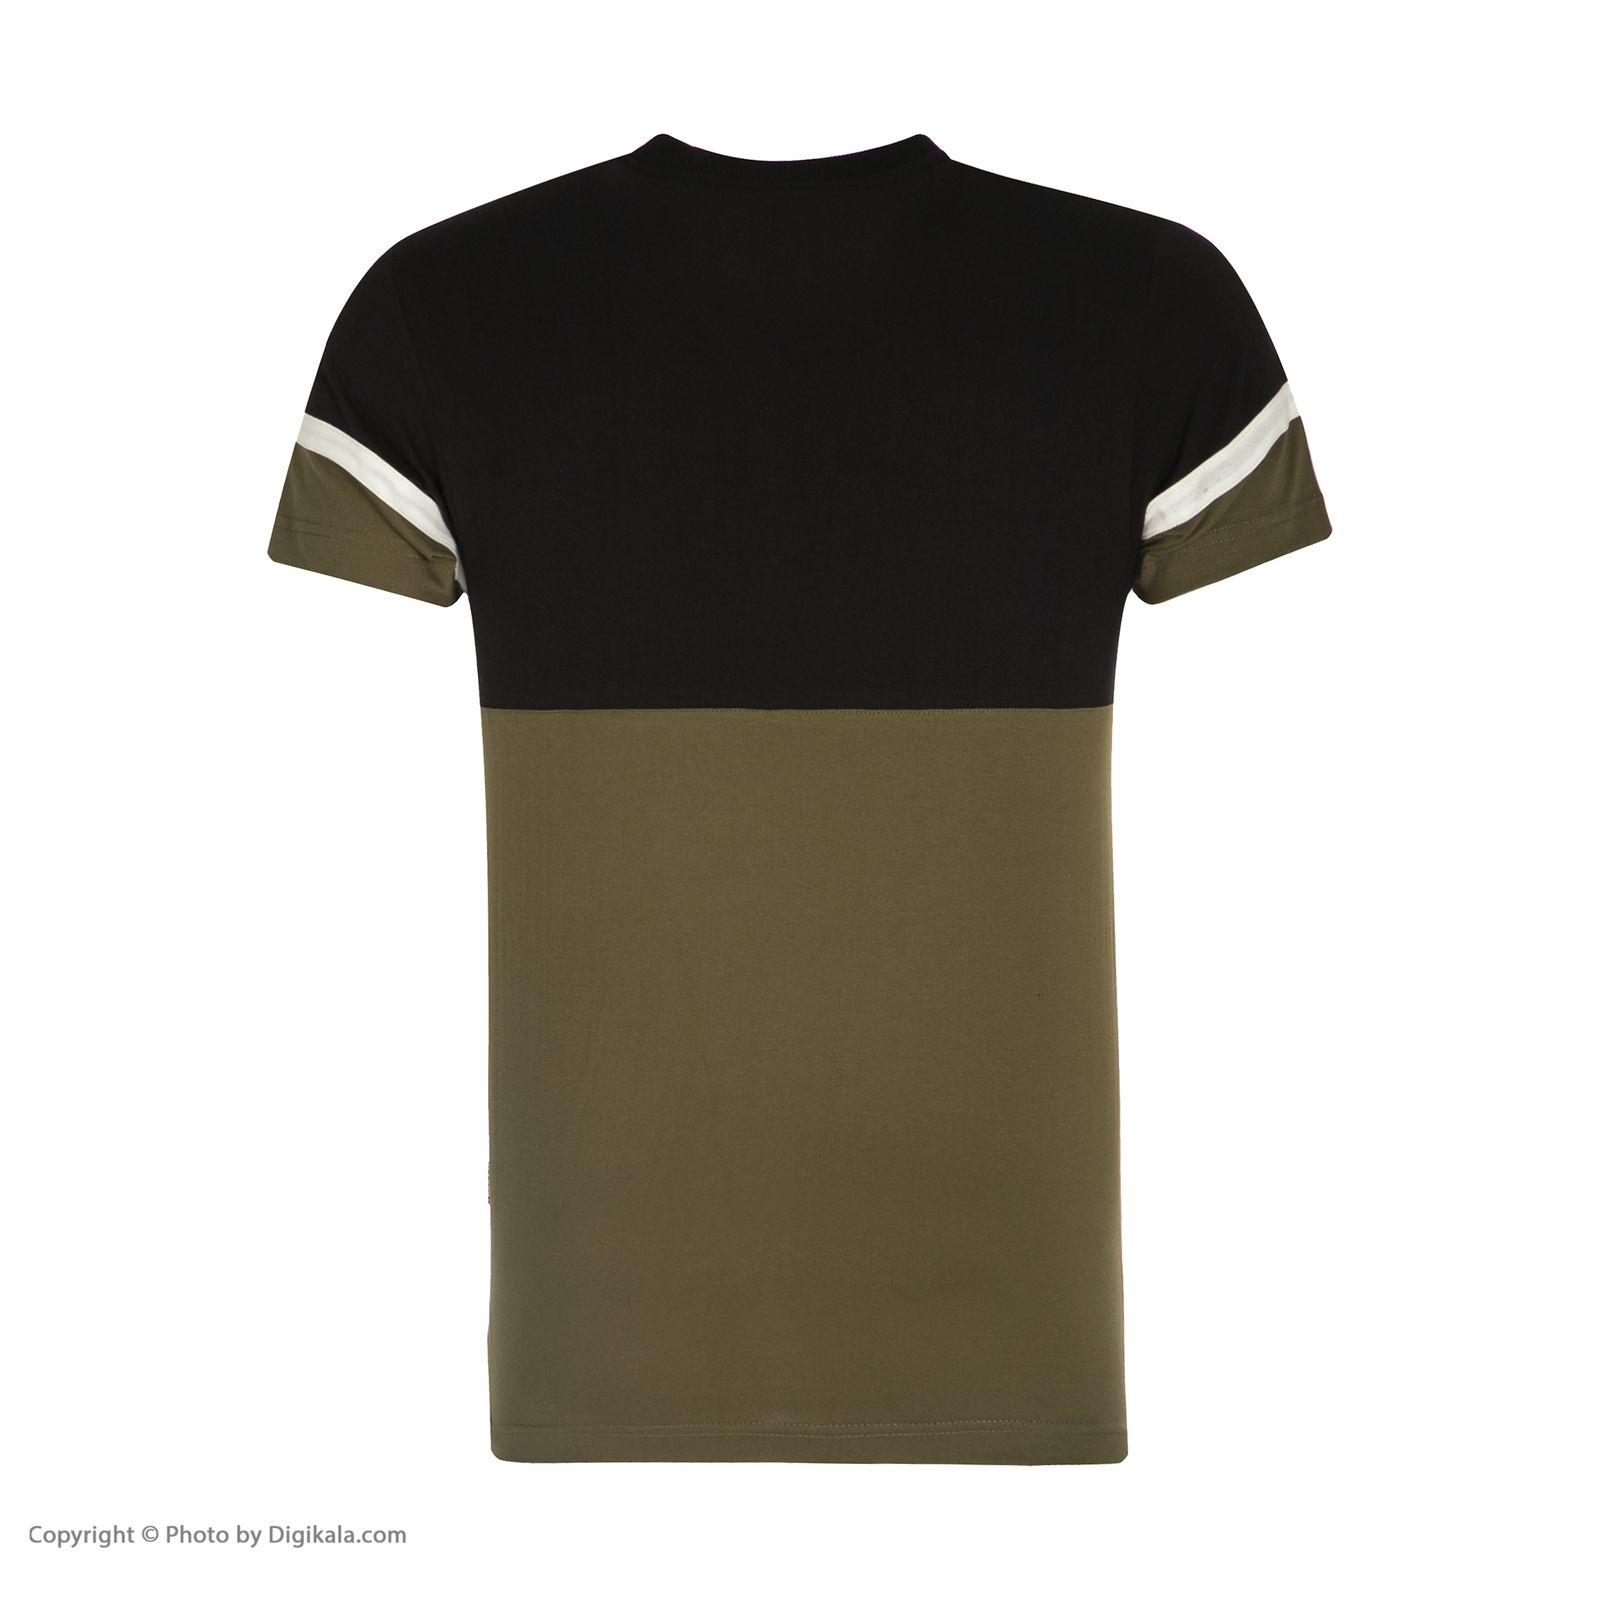 ست تی شرت و شلوار راحتی مردانه مولی جون مدل 2431102-7899 -  - 5